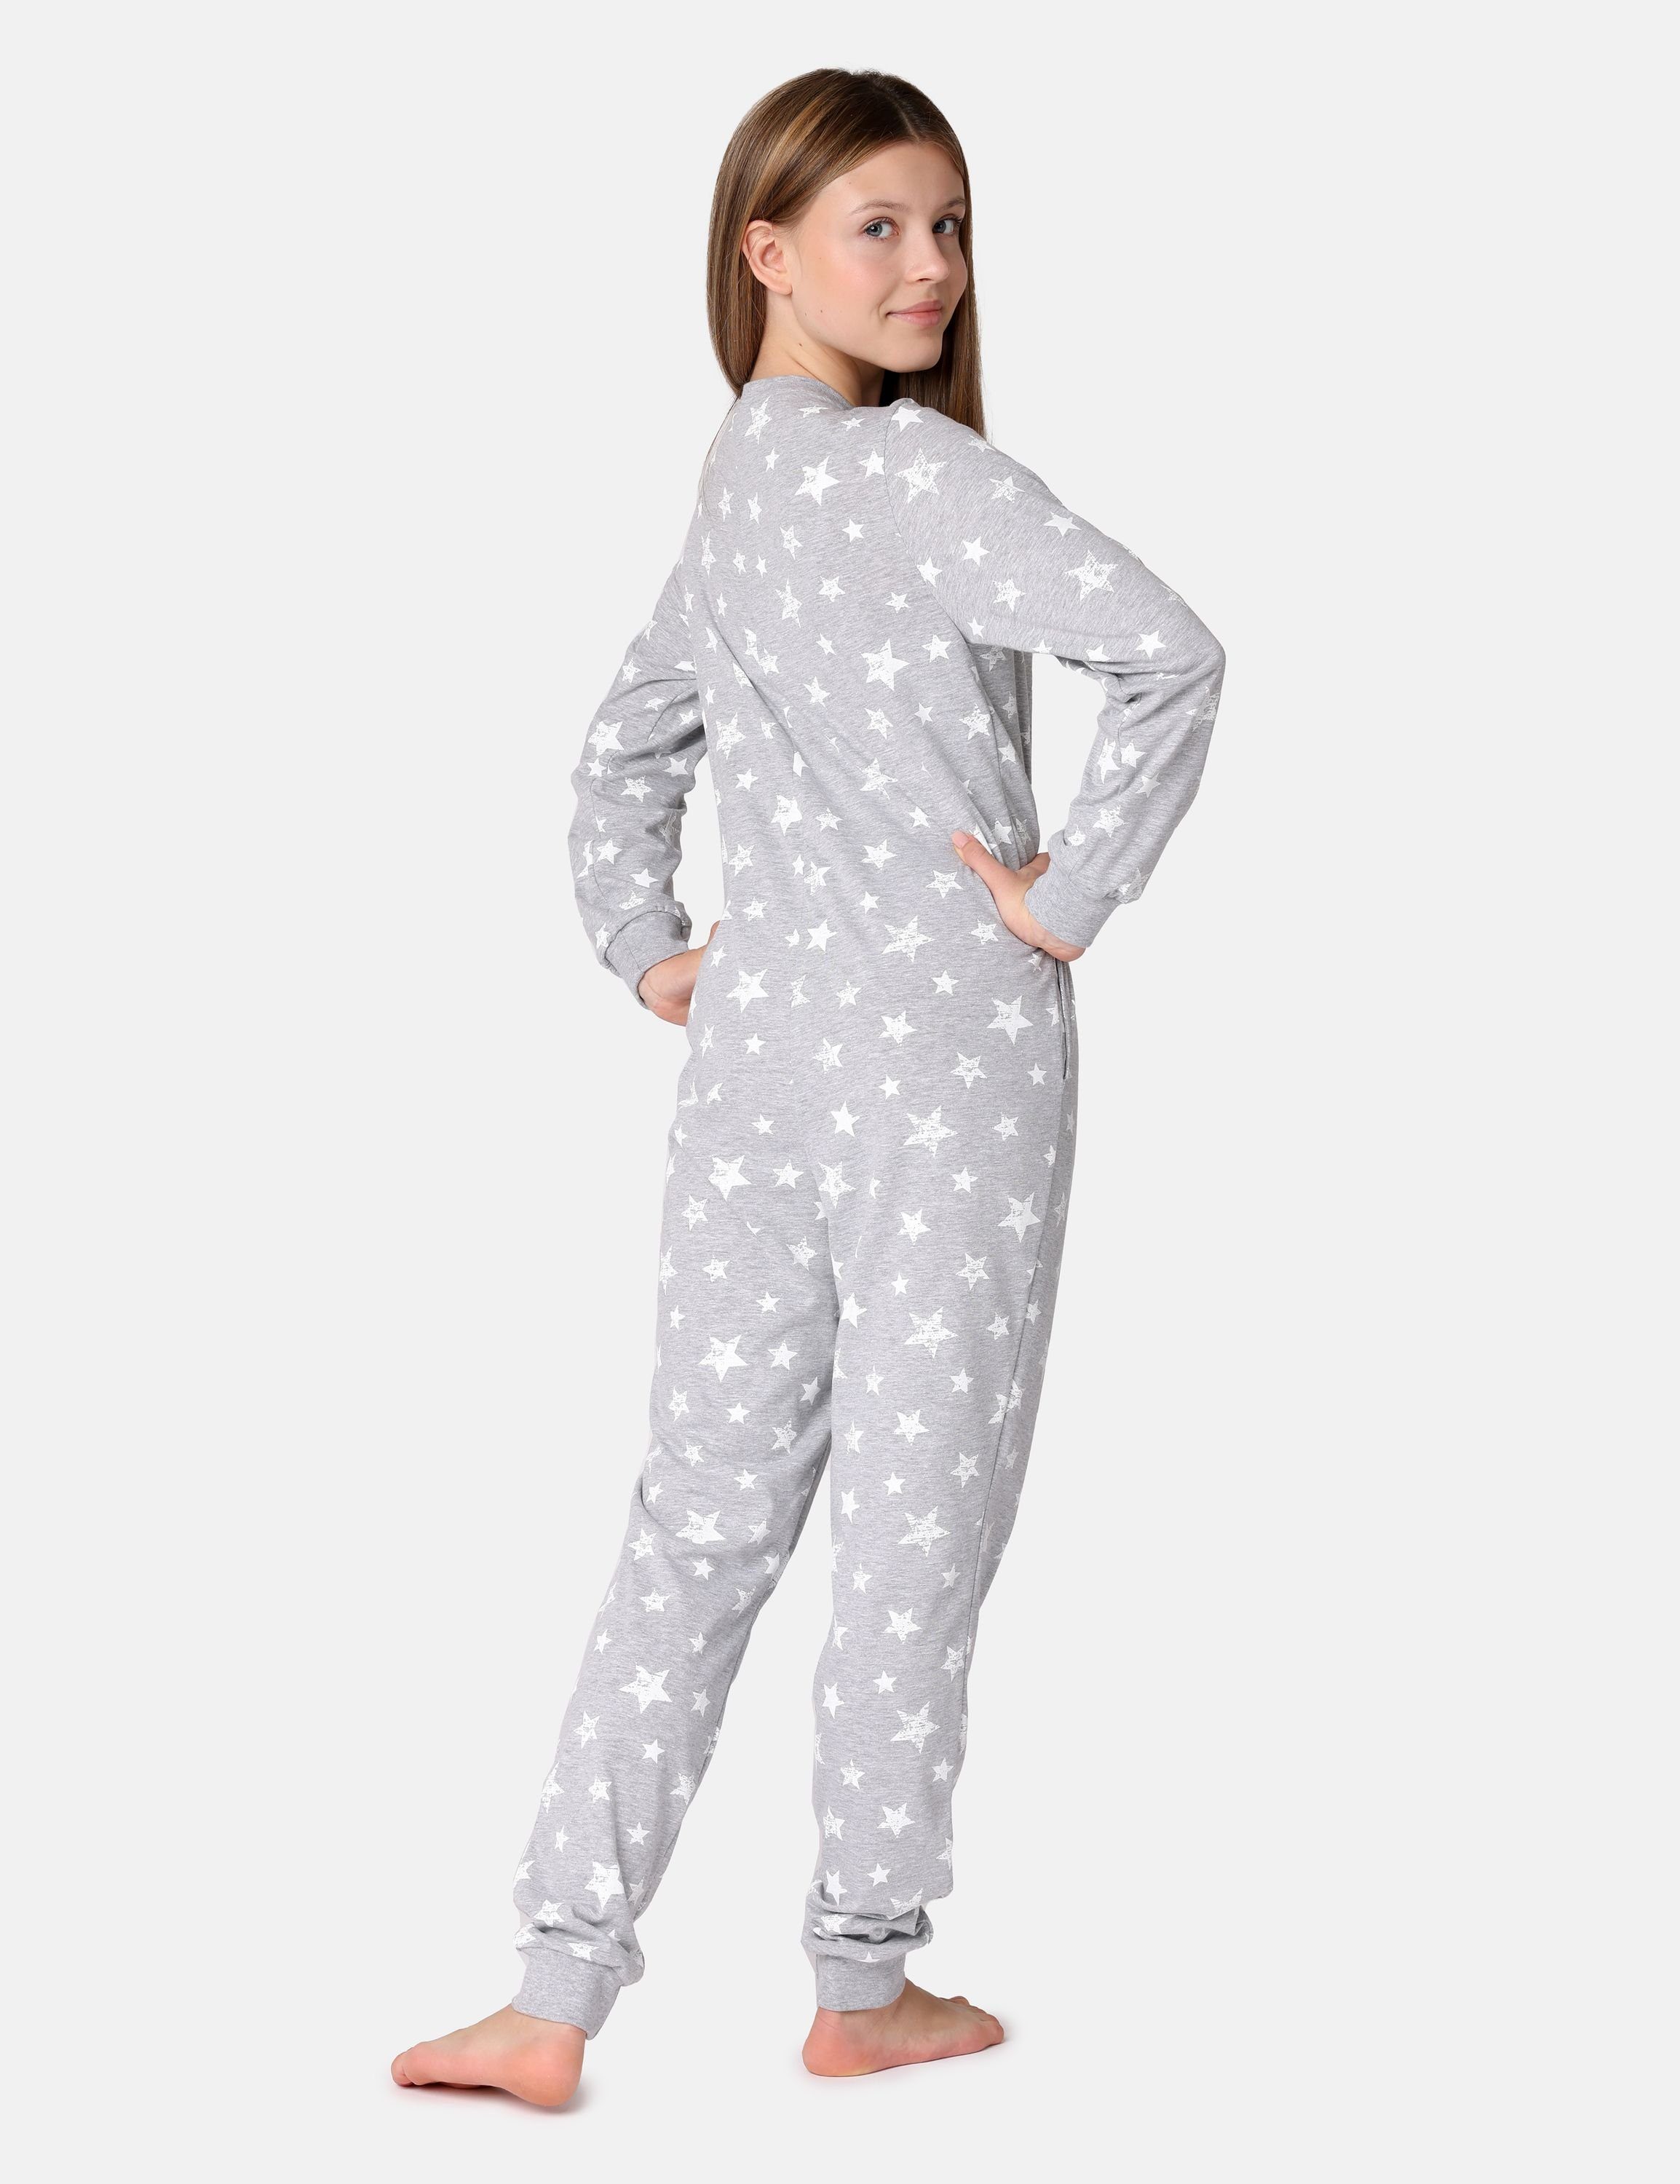 Jugend Melange/Ecru MS10-235 Schlafoverall Schlafanzug Mädchen Style Schlafanzug Merry Sterne